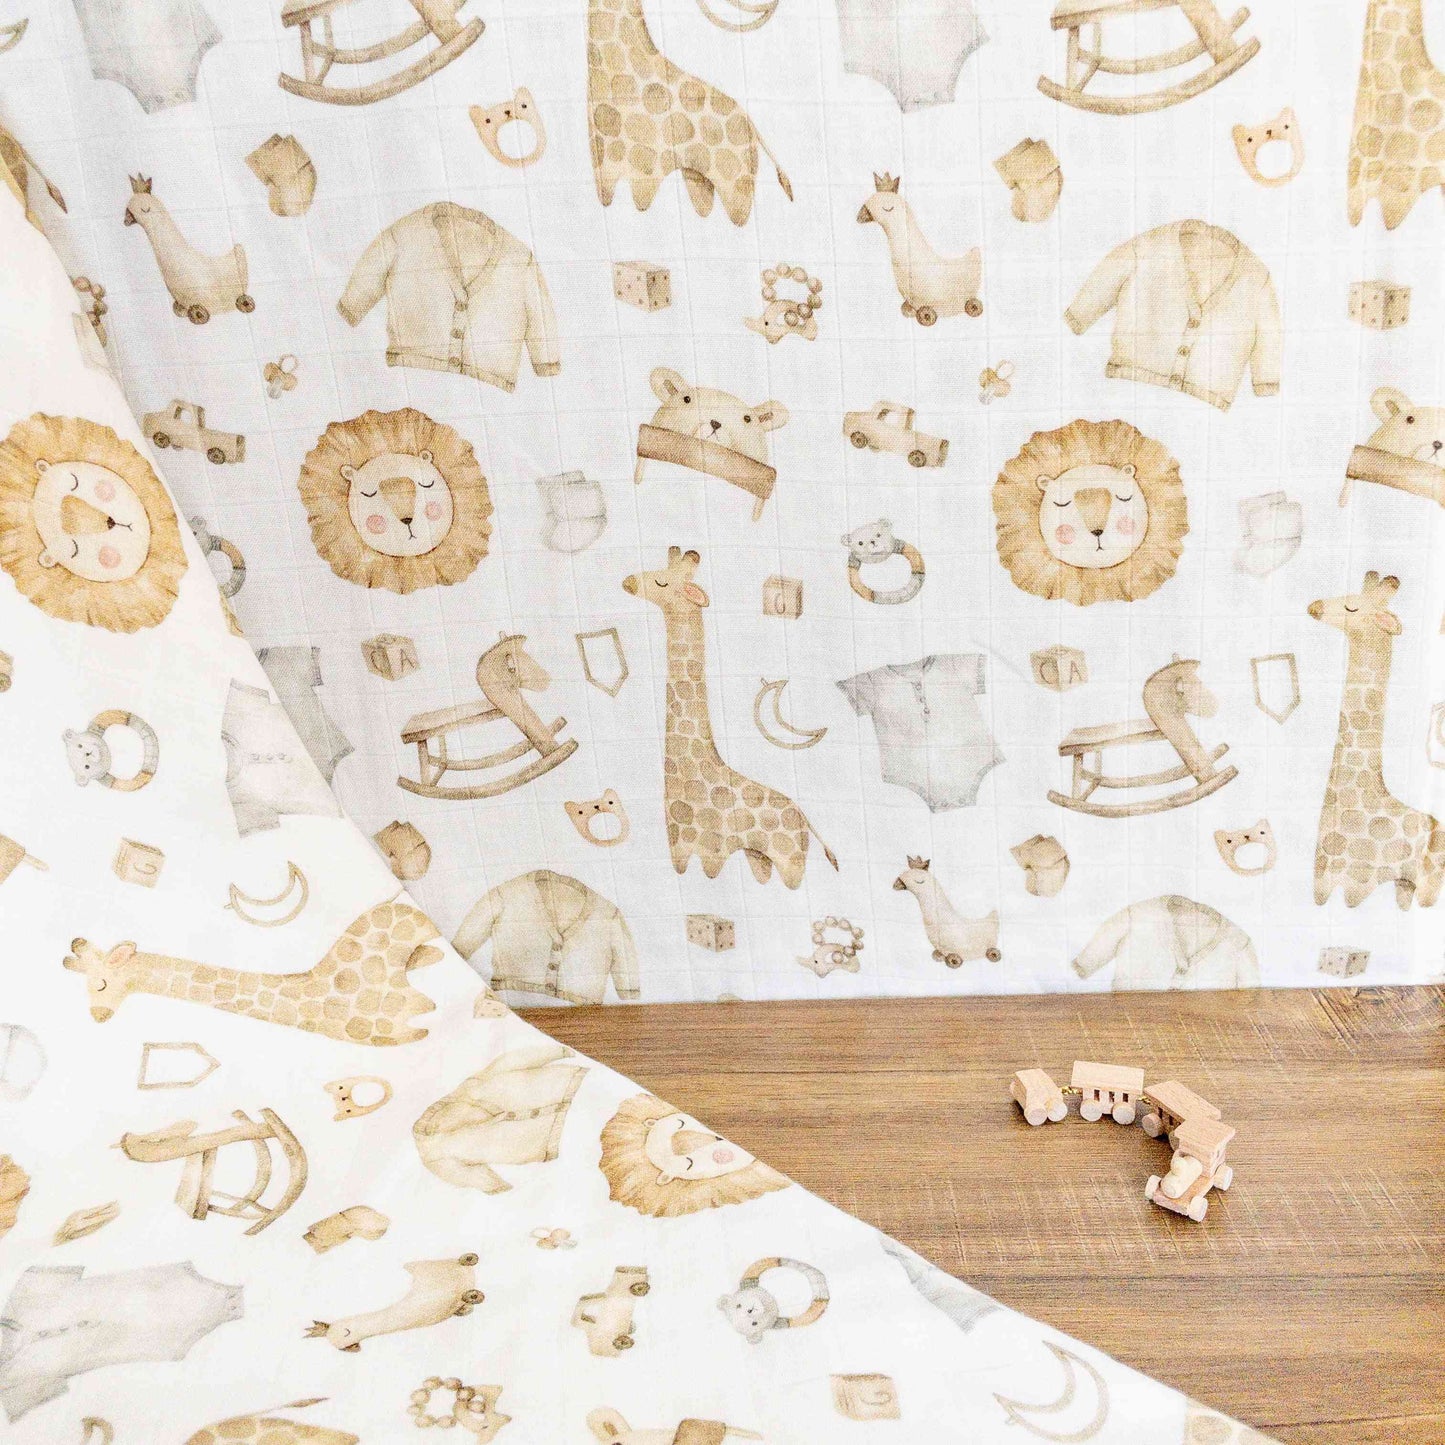 Mussola cotone e bambù con fantasia animali safari in colori beige, bianco e marrone, morbida traspirante e adatta a fasciatura neonato